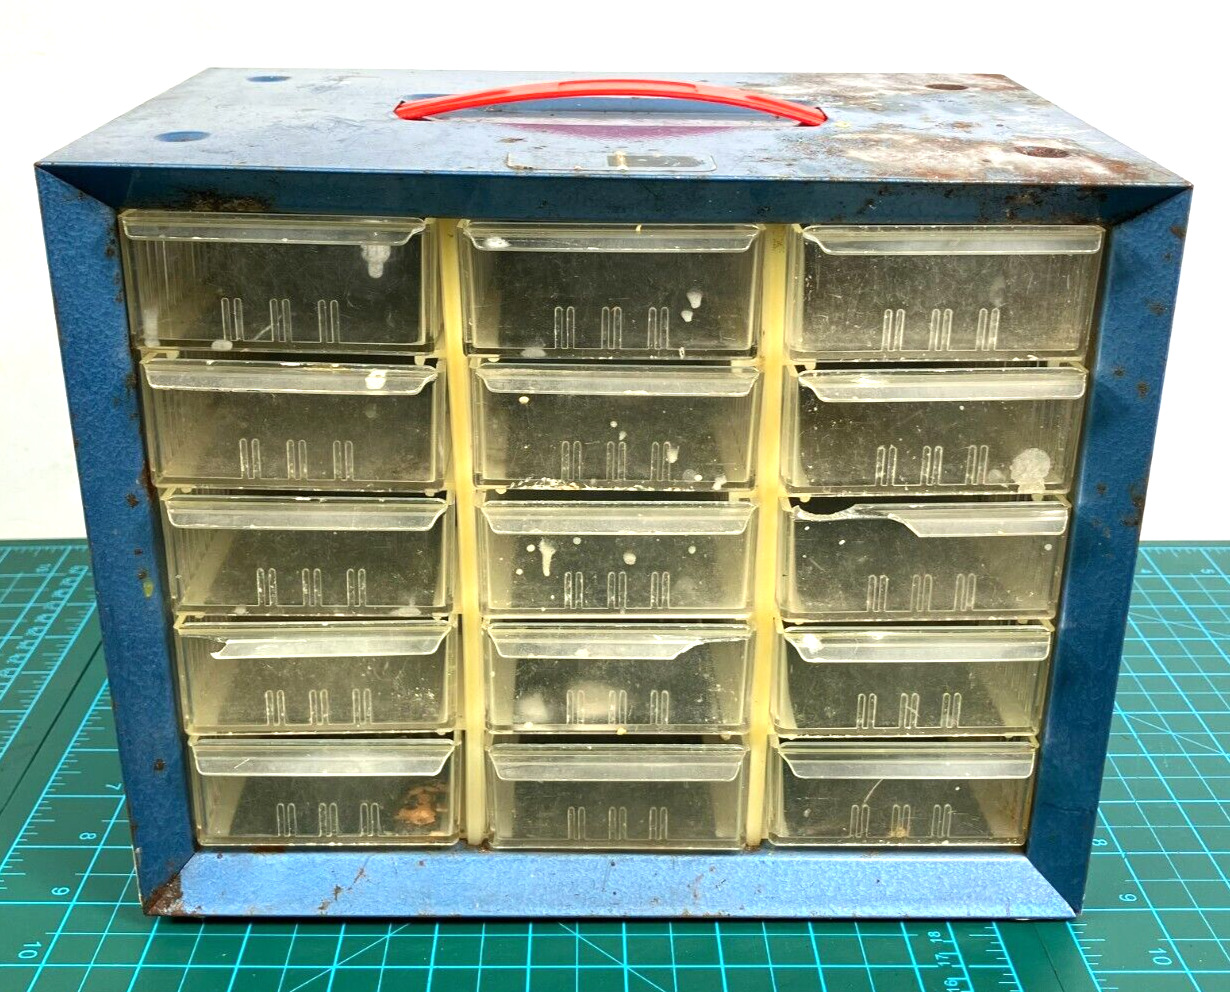 Vintage 15 Drawer Bin Hardware Tool Organizer Garage Storage metal Cabinet